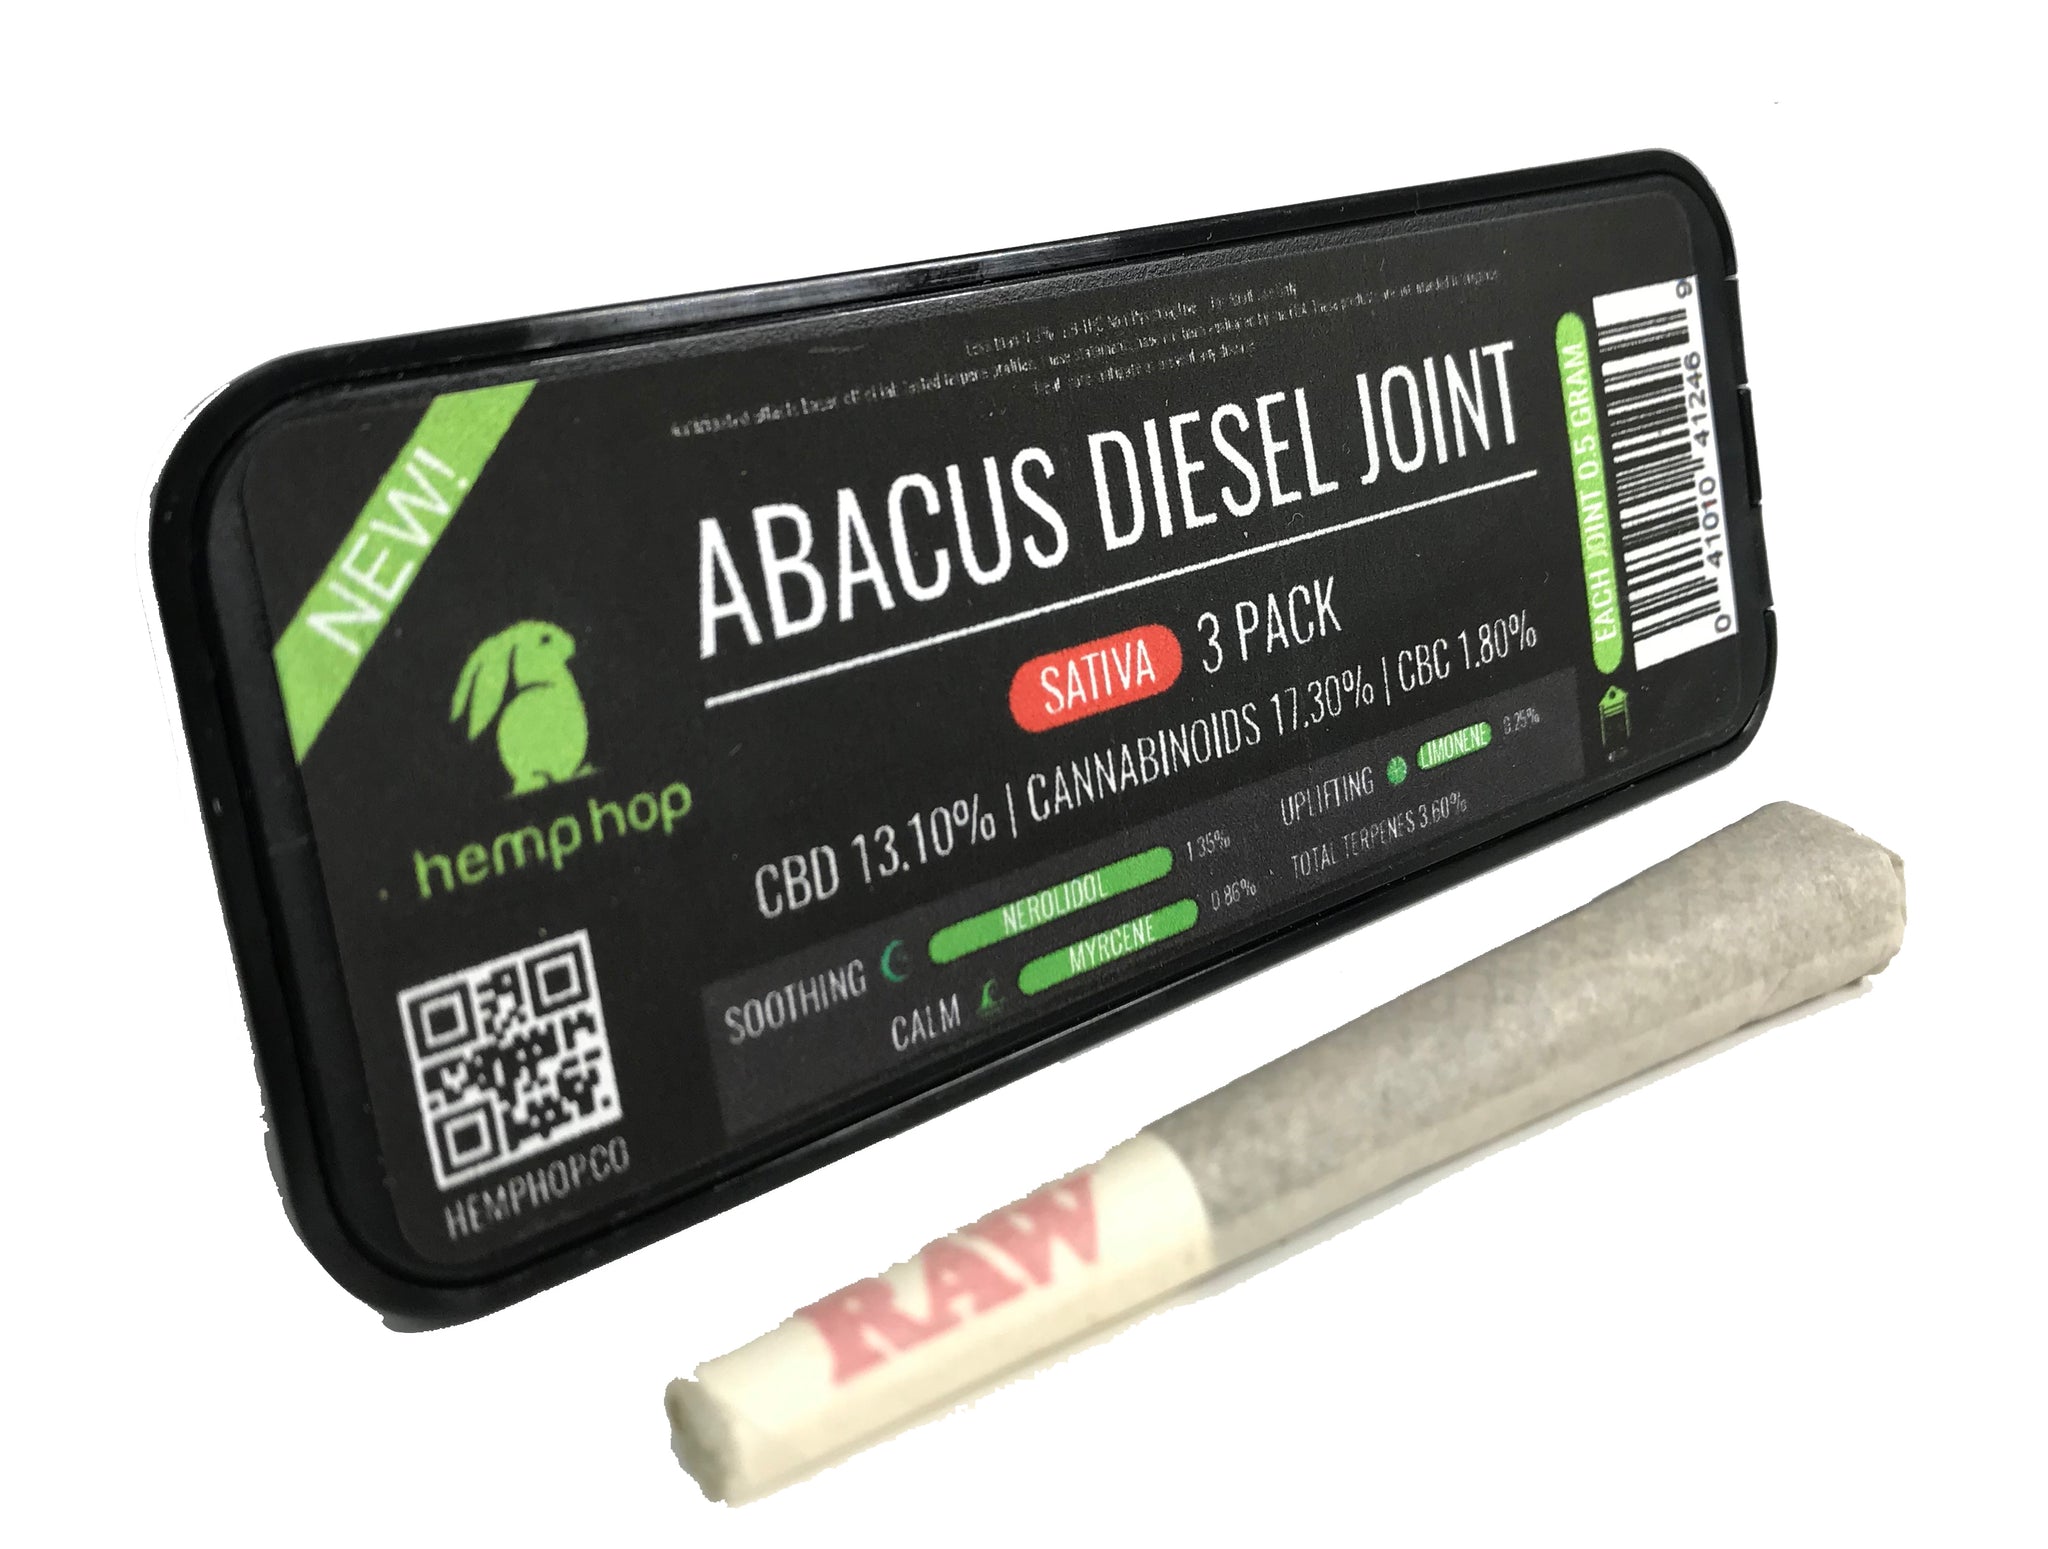 Abacus Diesel Joints 3 Pack